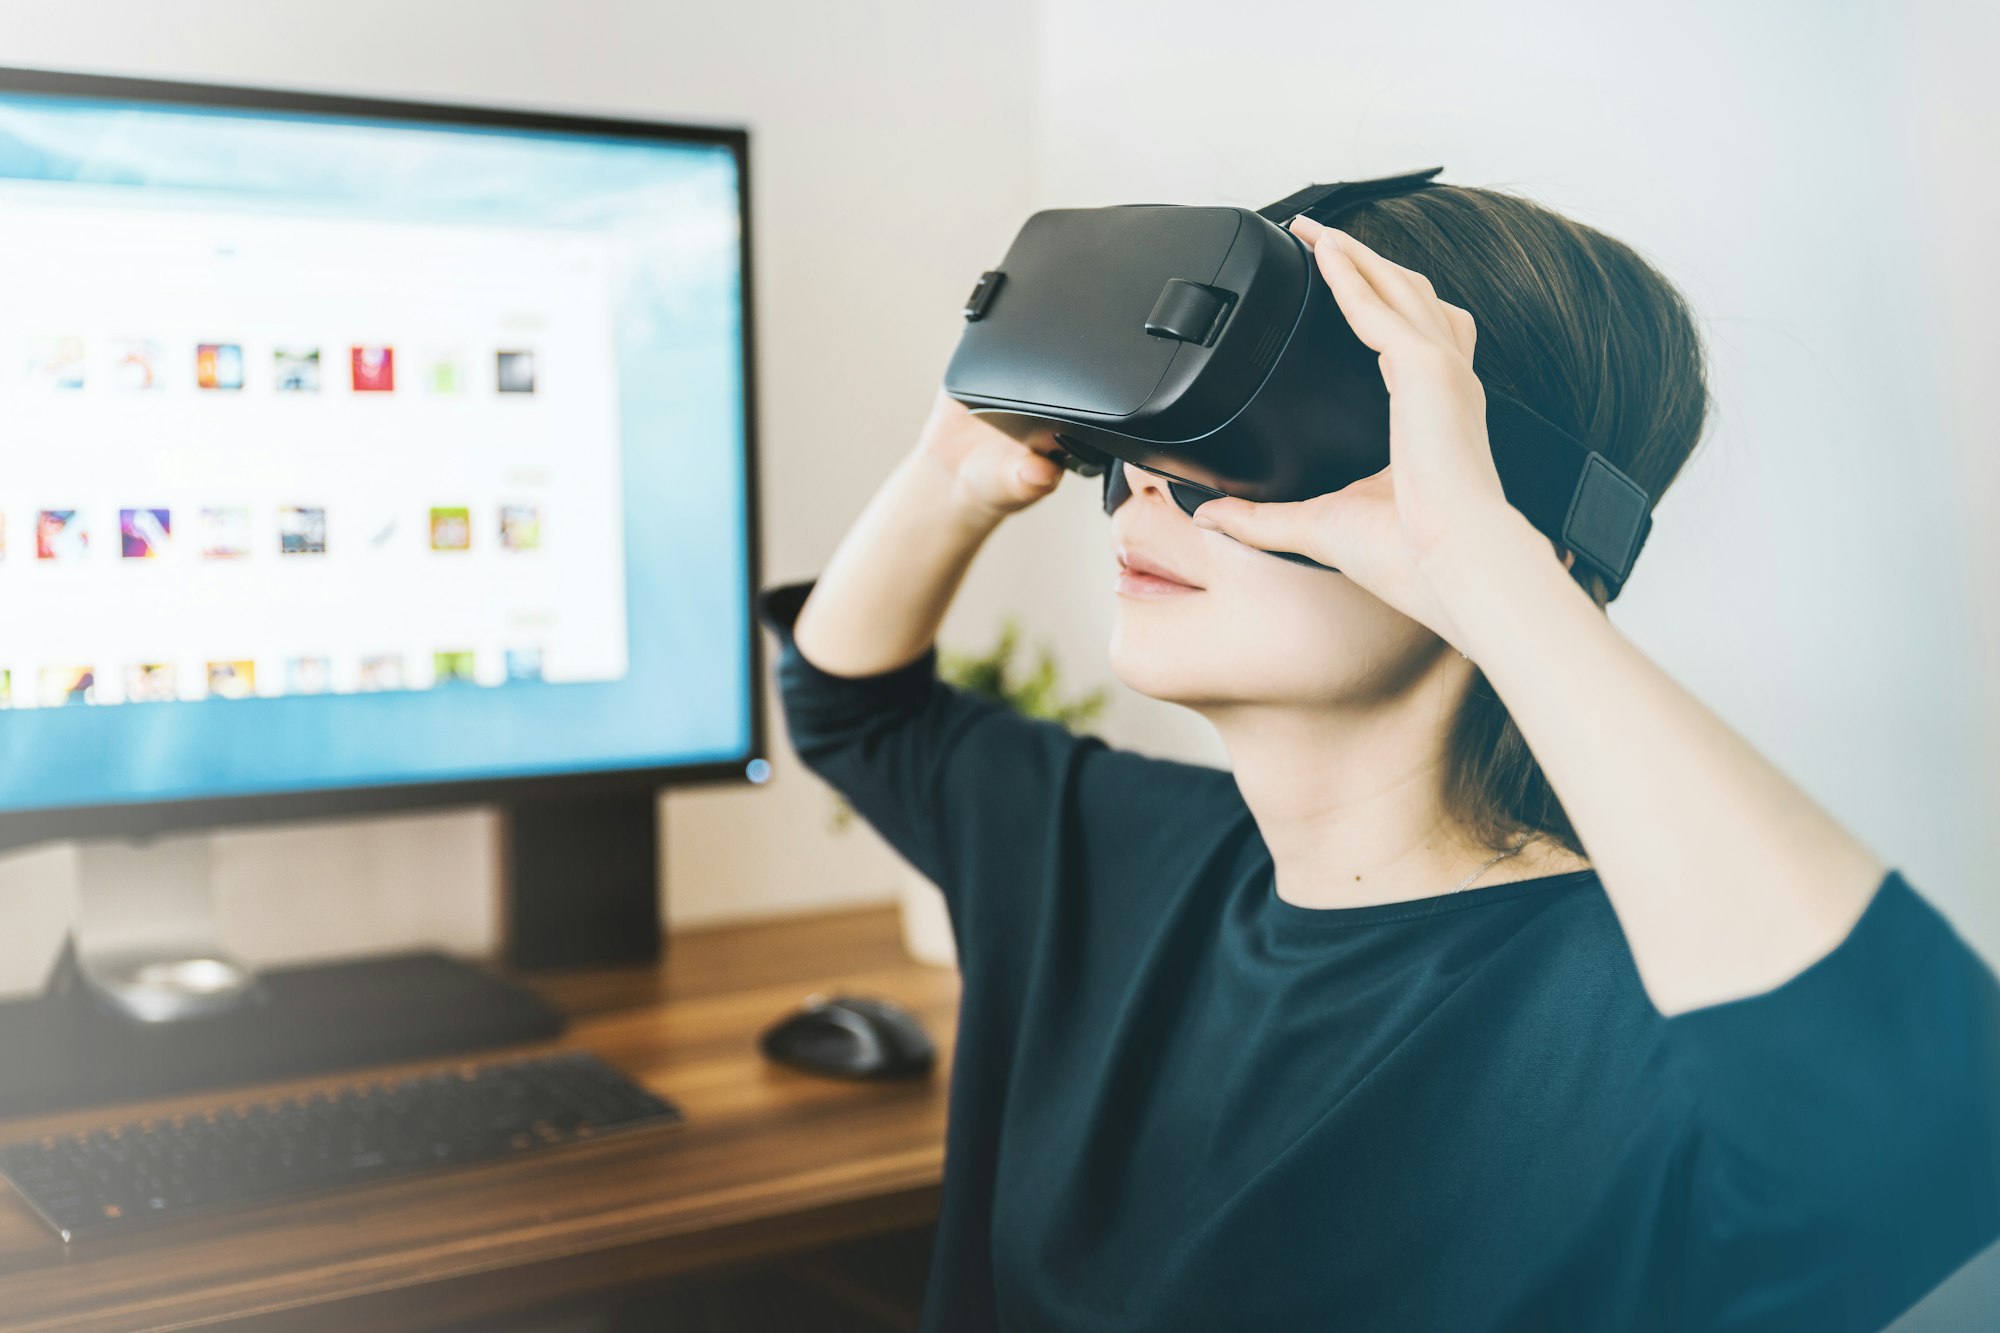 B2Mamy lança plataforma de realidade virtual e streaming e recebe investimento de 600 mil reais durante a quarentena